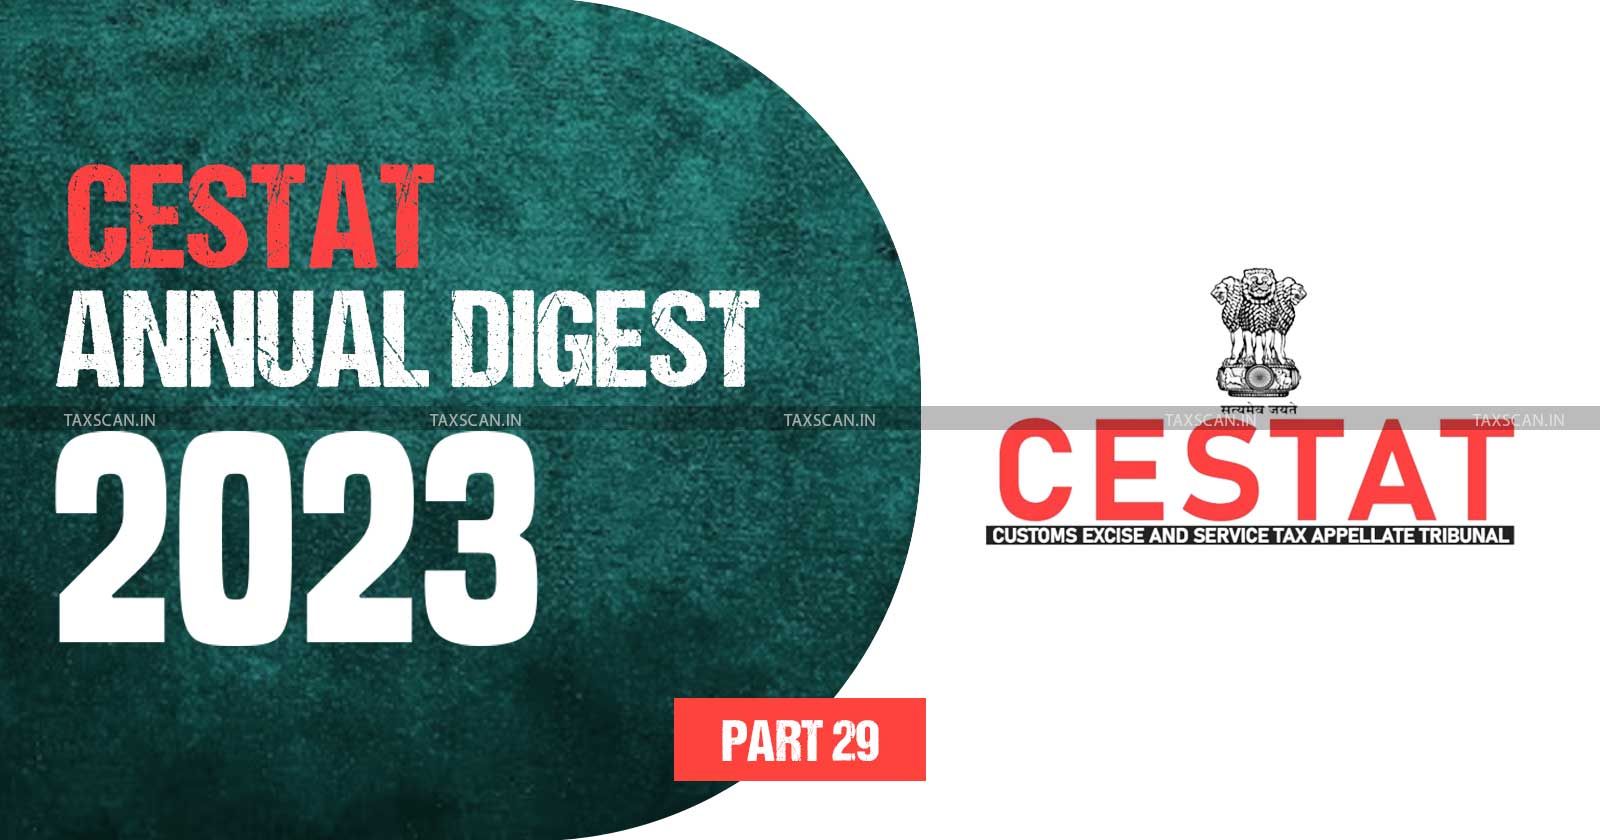 Annual Digest 2023 - CESTAT Annual Digest 2023 - cestat - part 29 - TAXSCAN